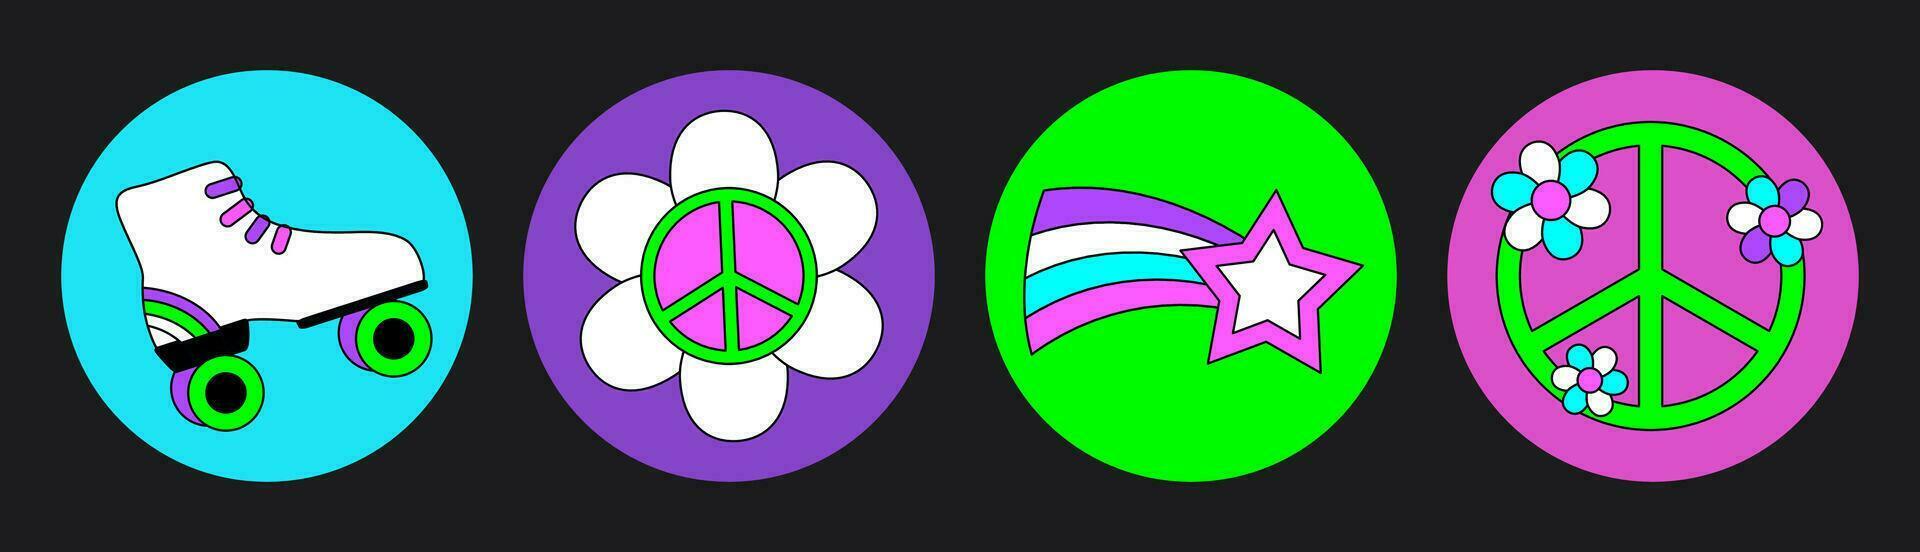 häftig hippie cirkel klistermärke 70s uppsättning. rolig tecknad serie ljus neon färger - blomma, kärlek, regnbåge, fred, hjärta, tusensköna, svamp, öga. psychedelic packa i trendig retro stil. isolerat vektor. vektor